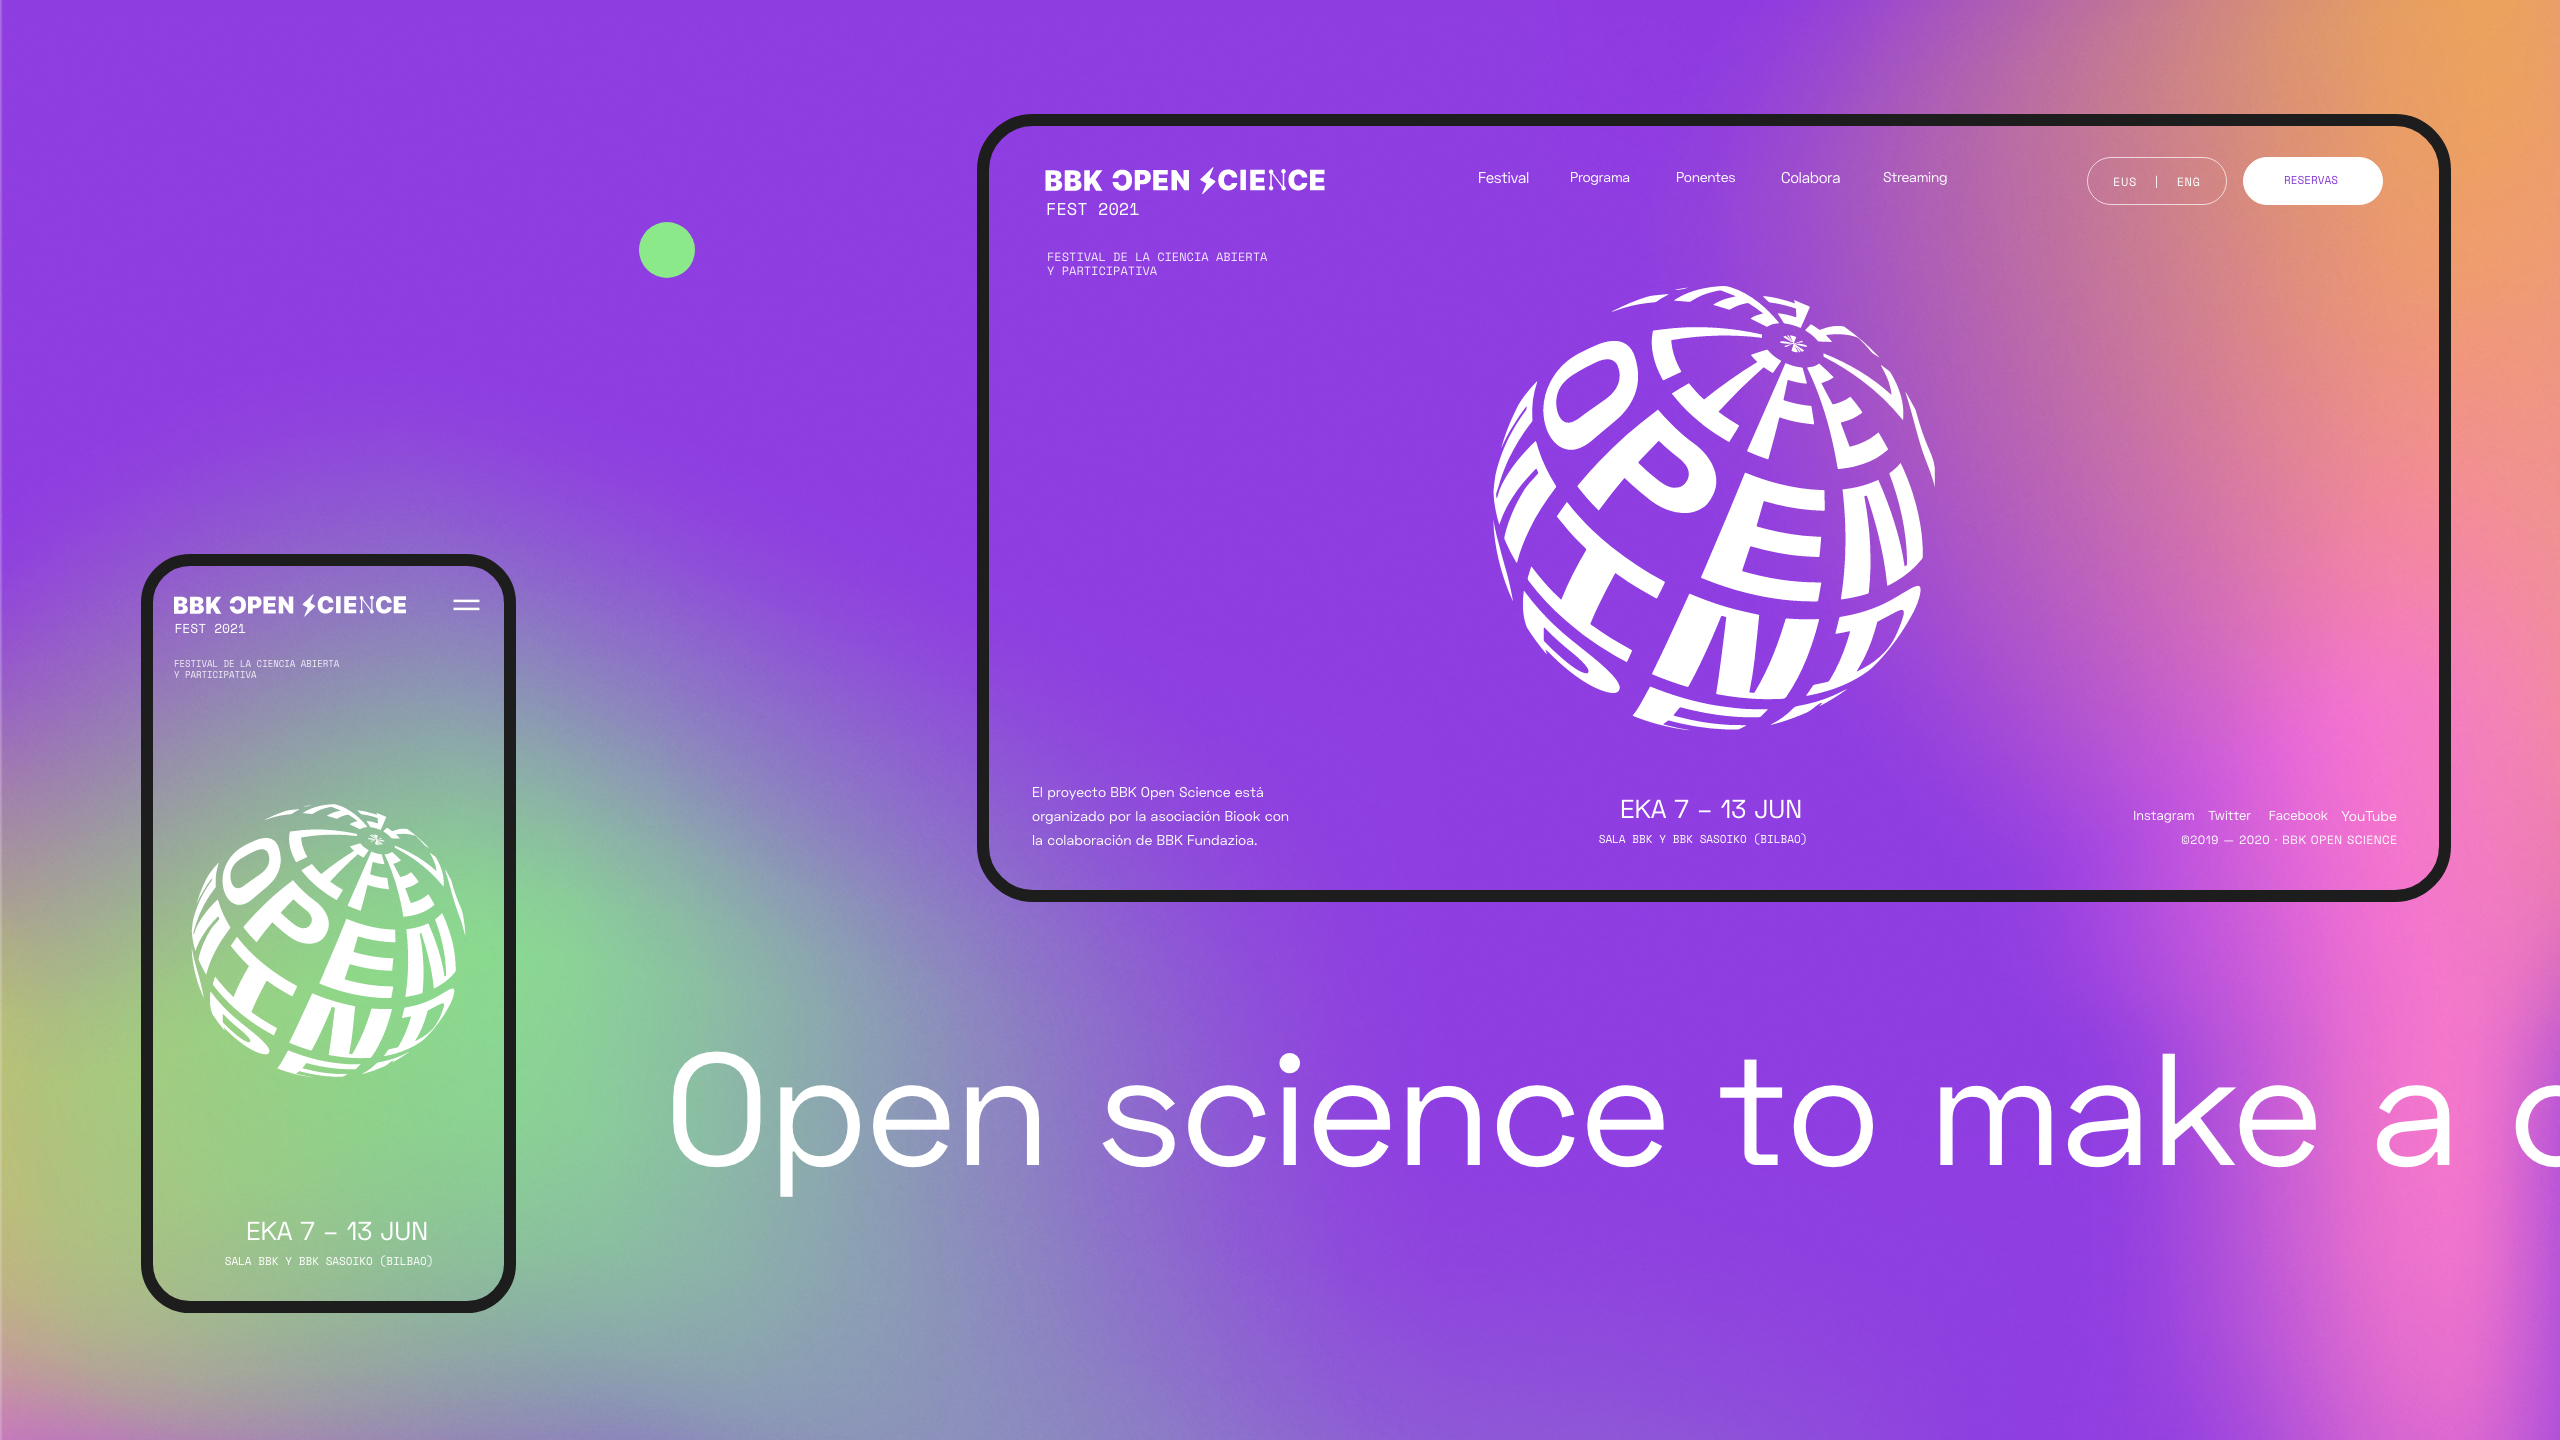 BBK Open Sciene Fest 2021 by Hermes Grau, Clara Briones, Antton Ugarte - Creative Work - $i